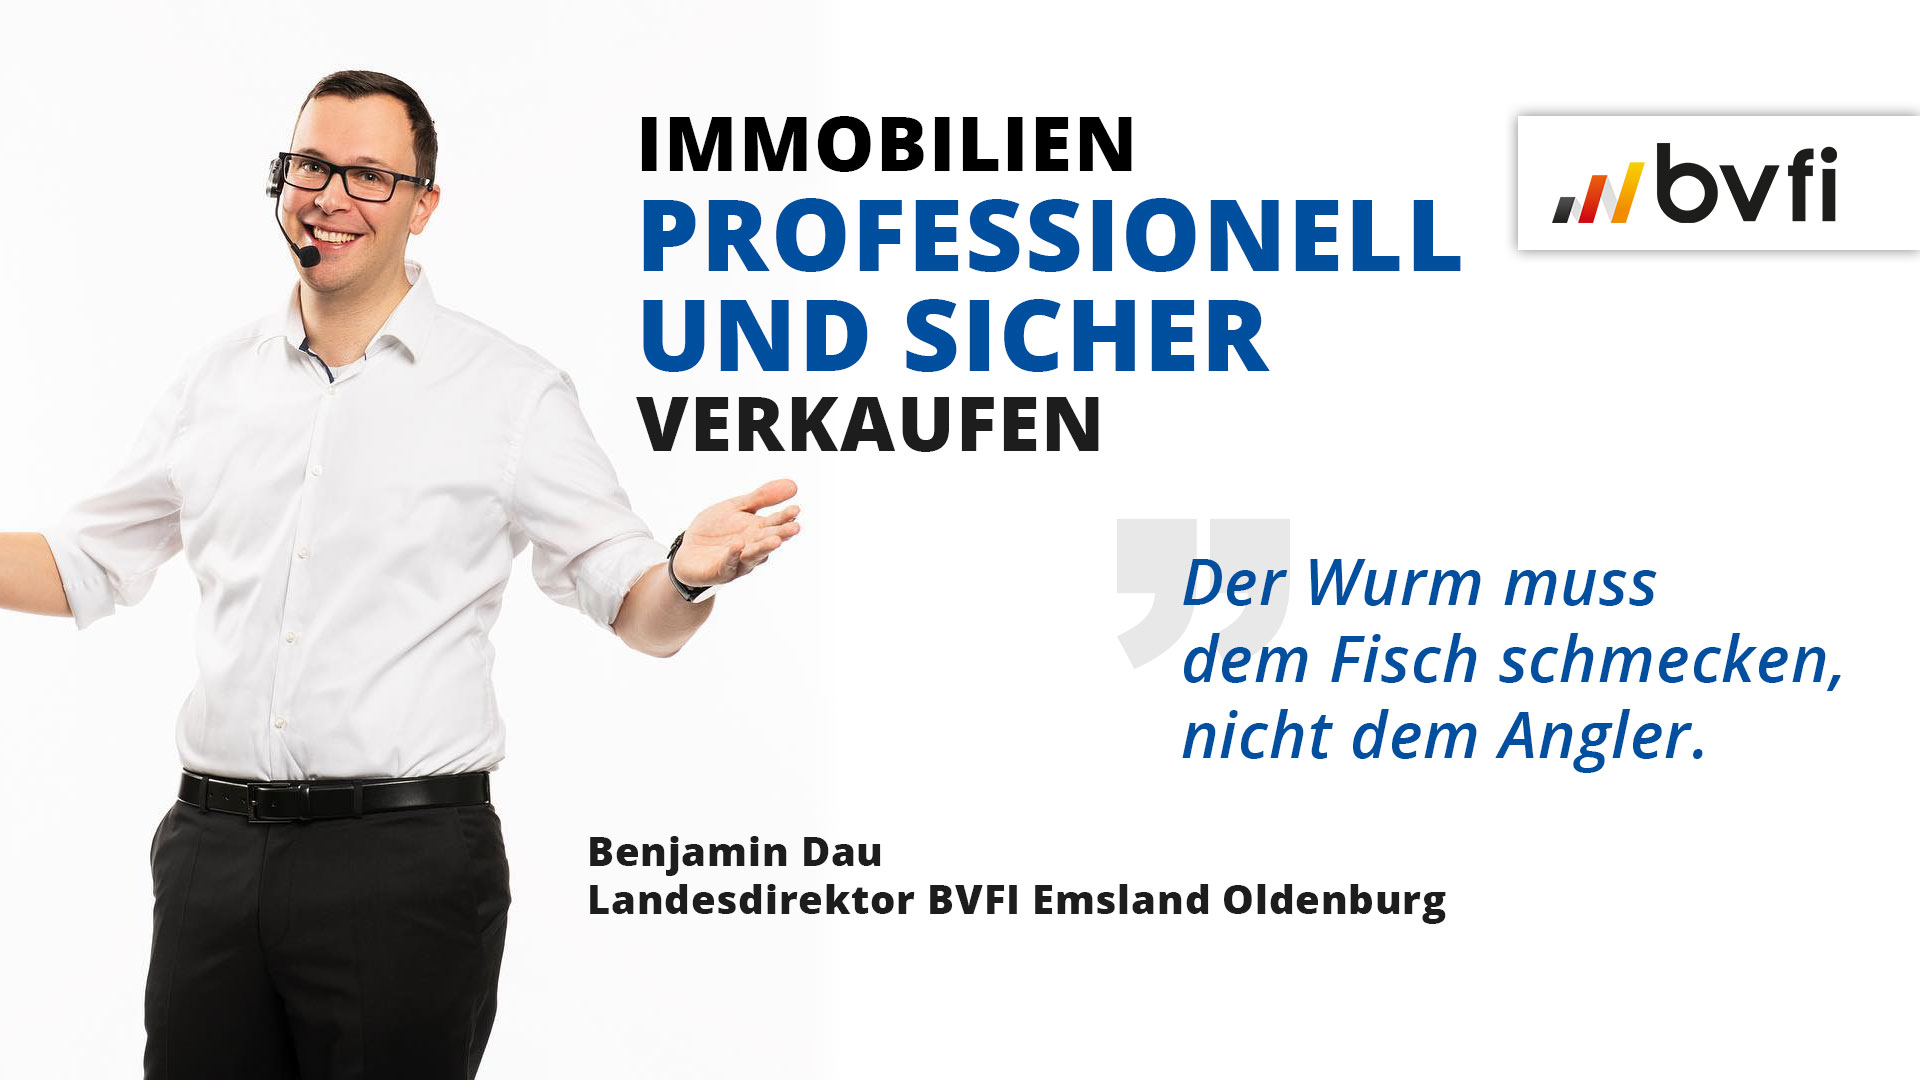 M&D_Immobilien_professionell_und_sicher_verkaufen_Post_revS_v2